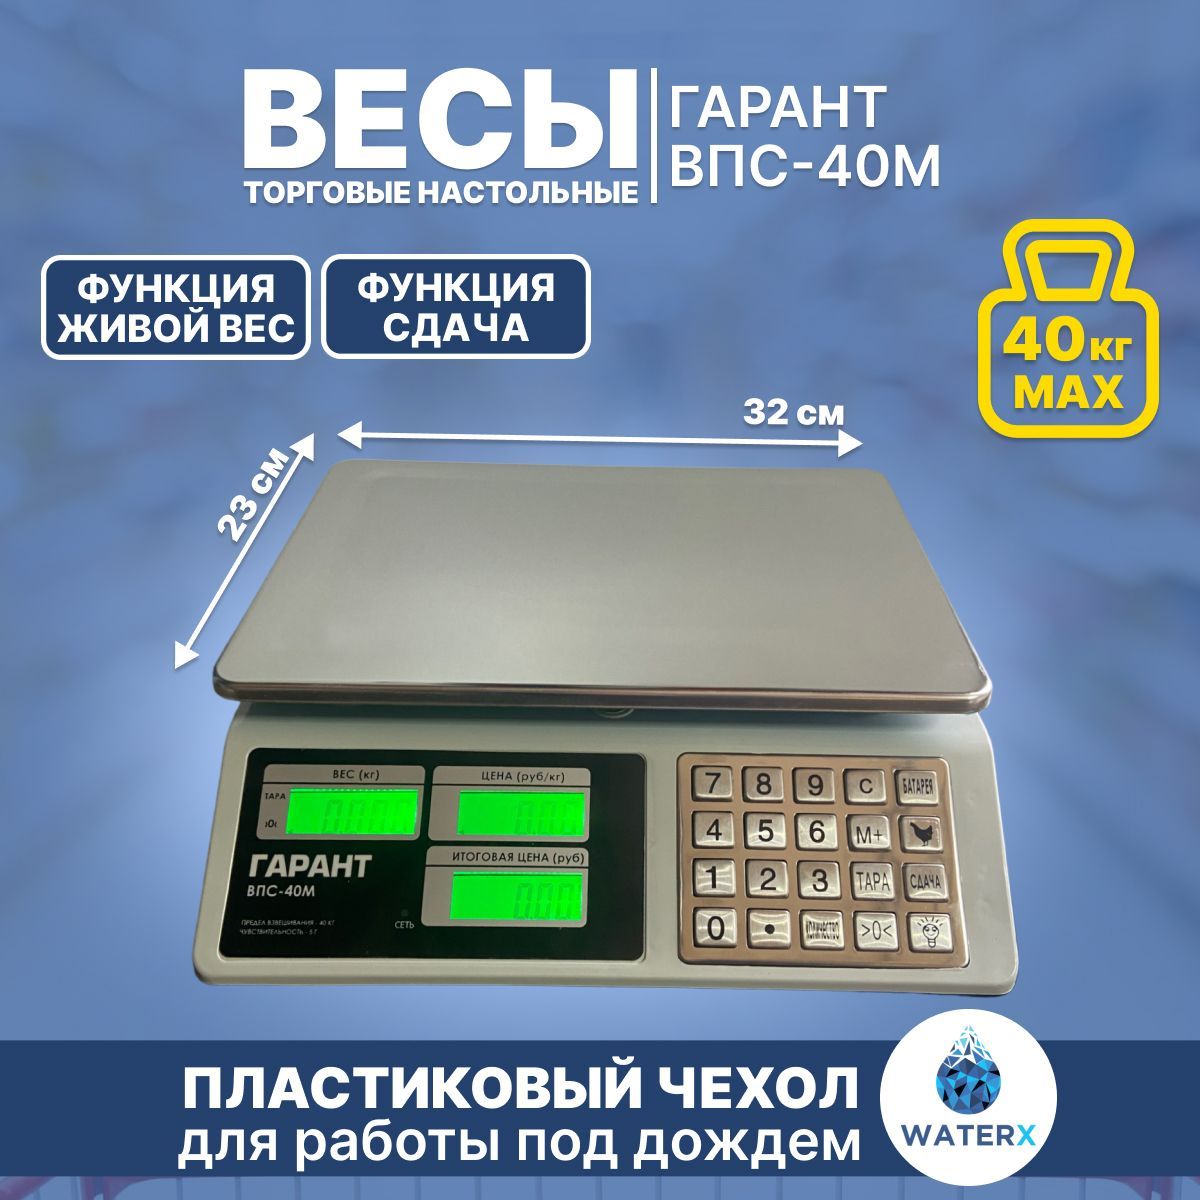 ВесыГарантВПС-40Мсметалл.кнопками(торговые/настольные)